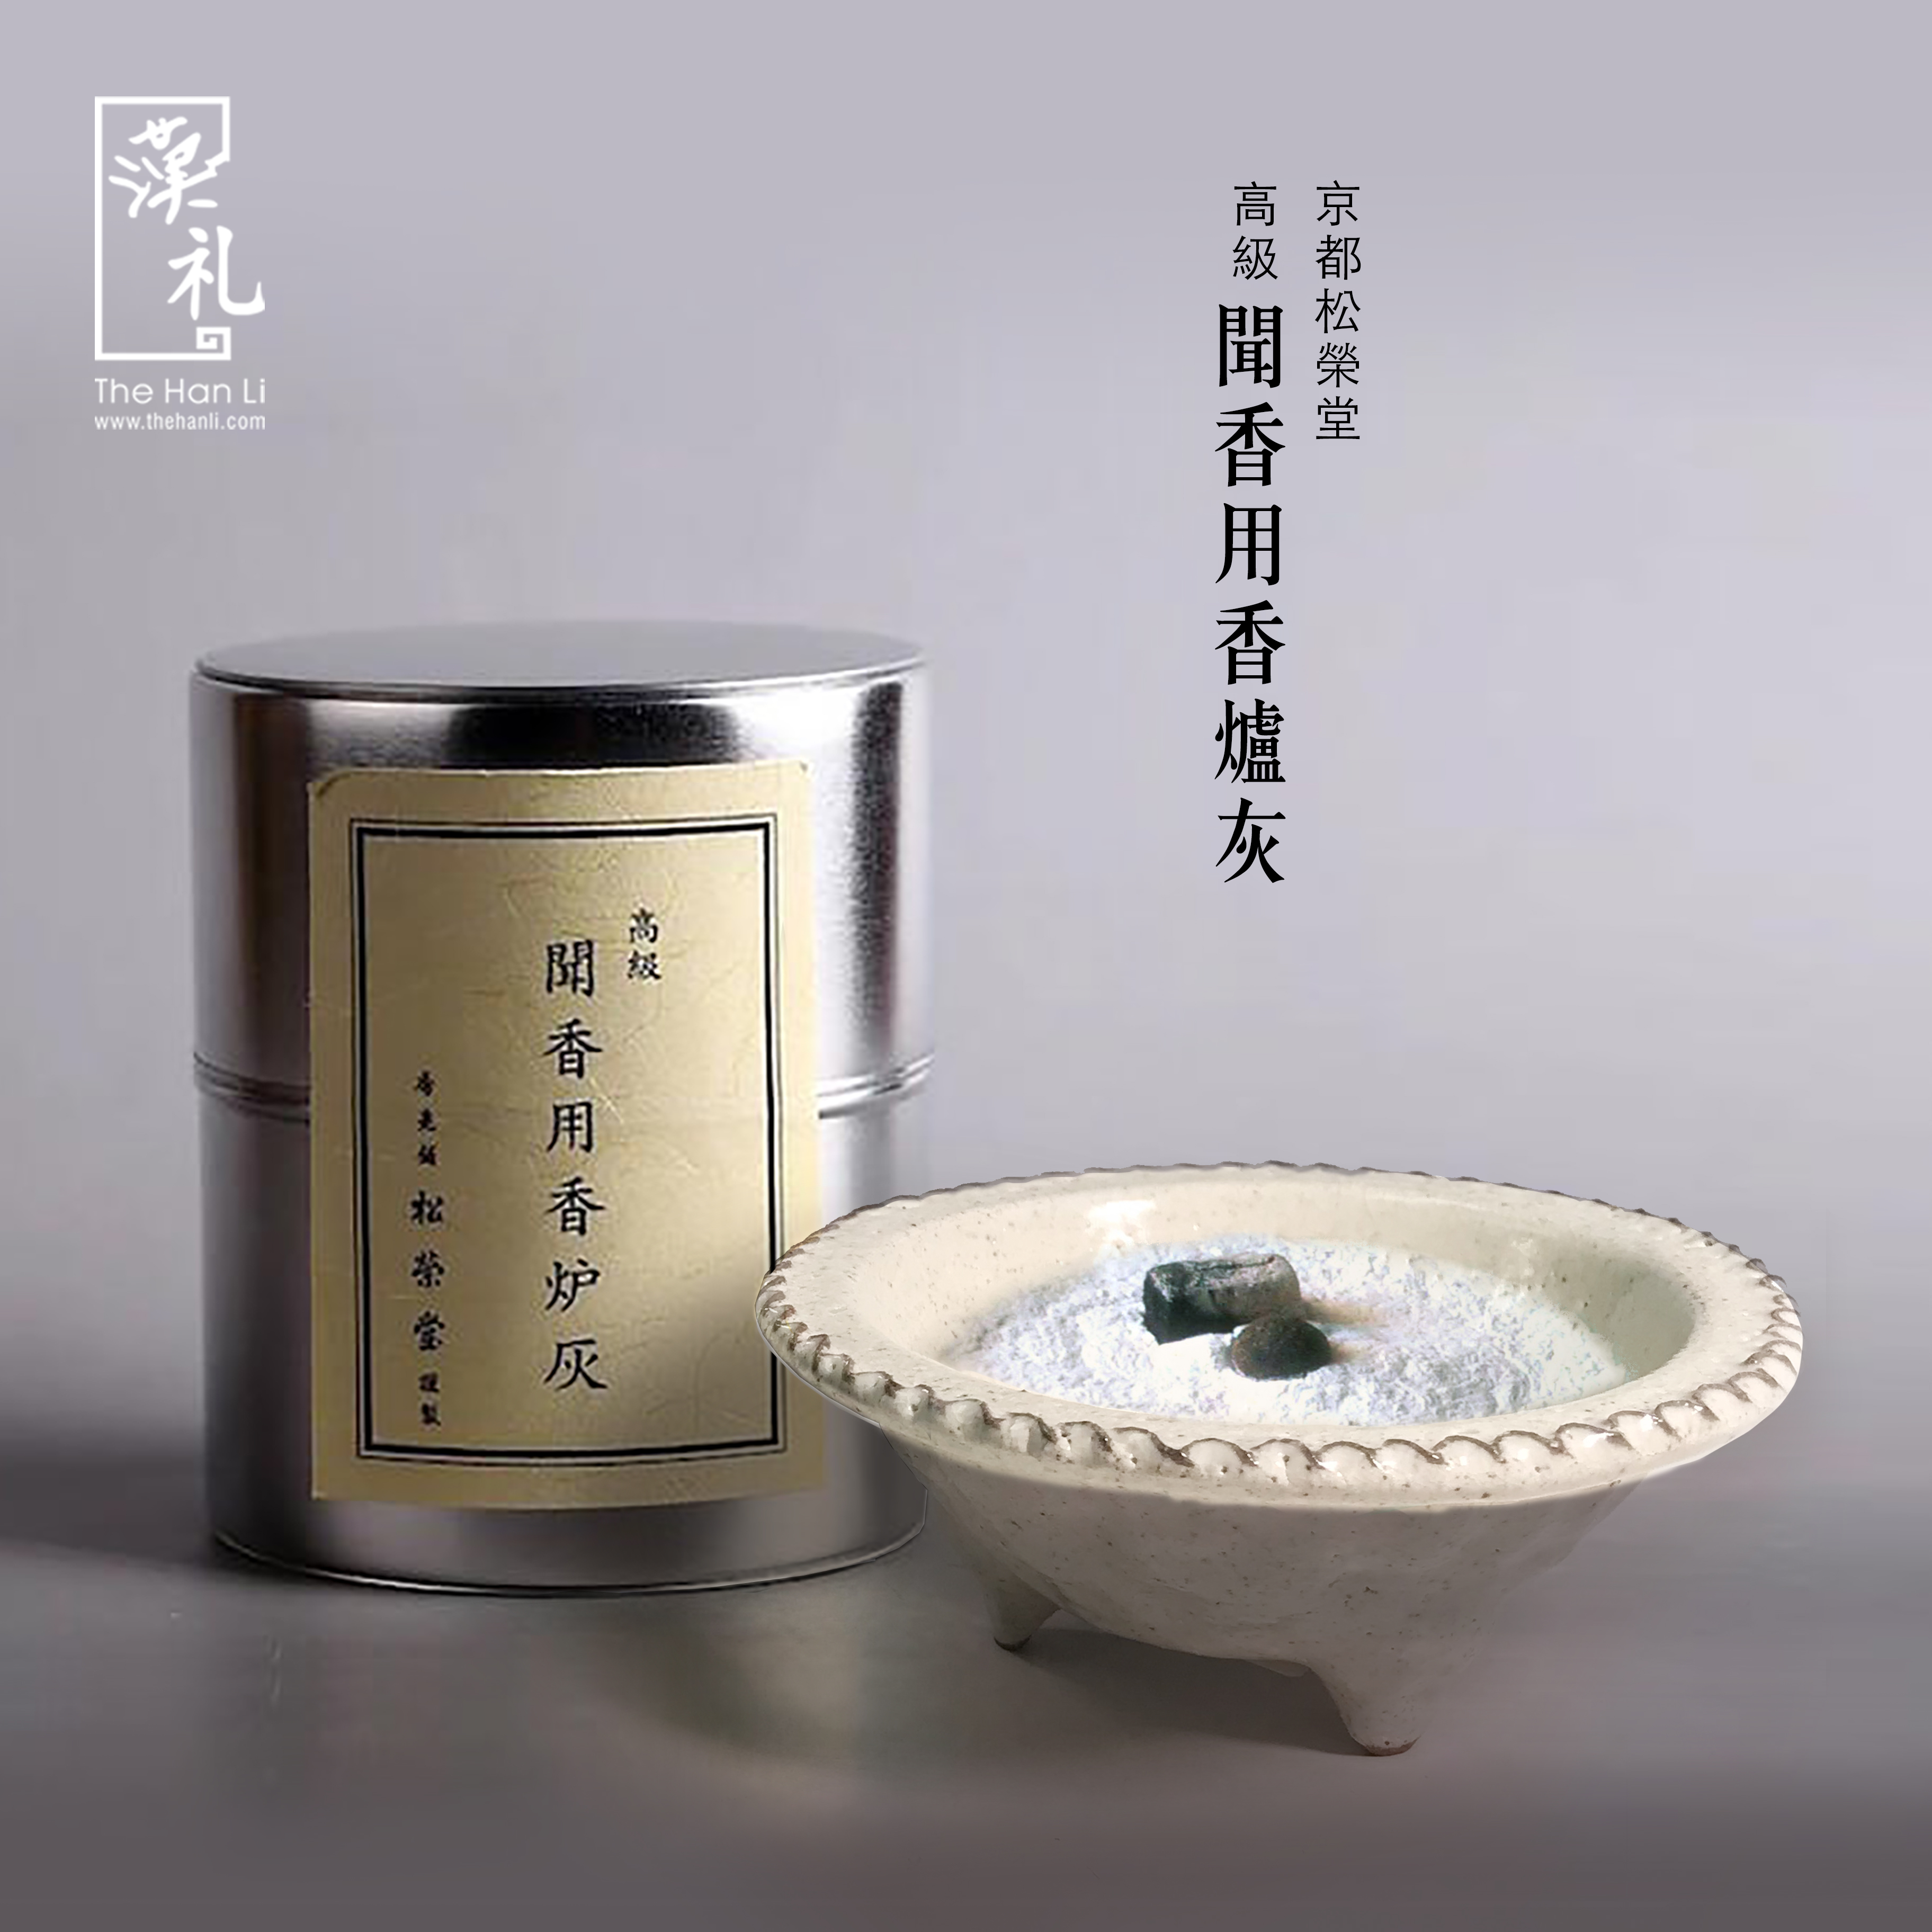 松榮堂- 高級聞香用香爐灰|漢礼